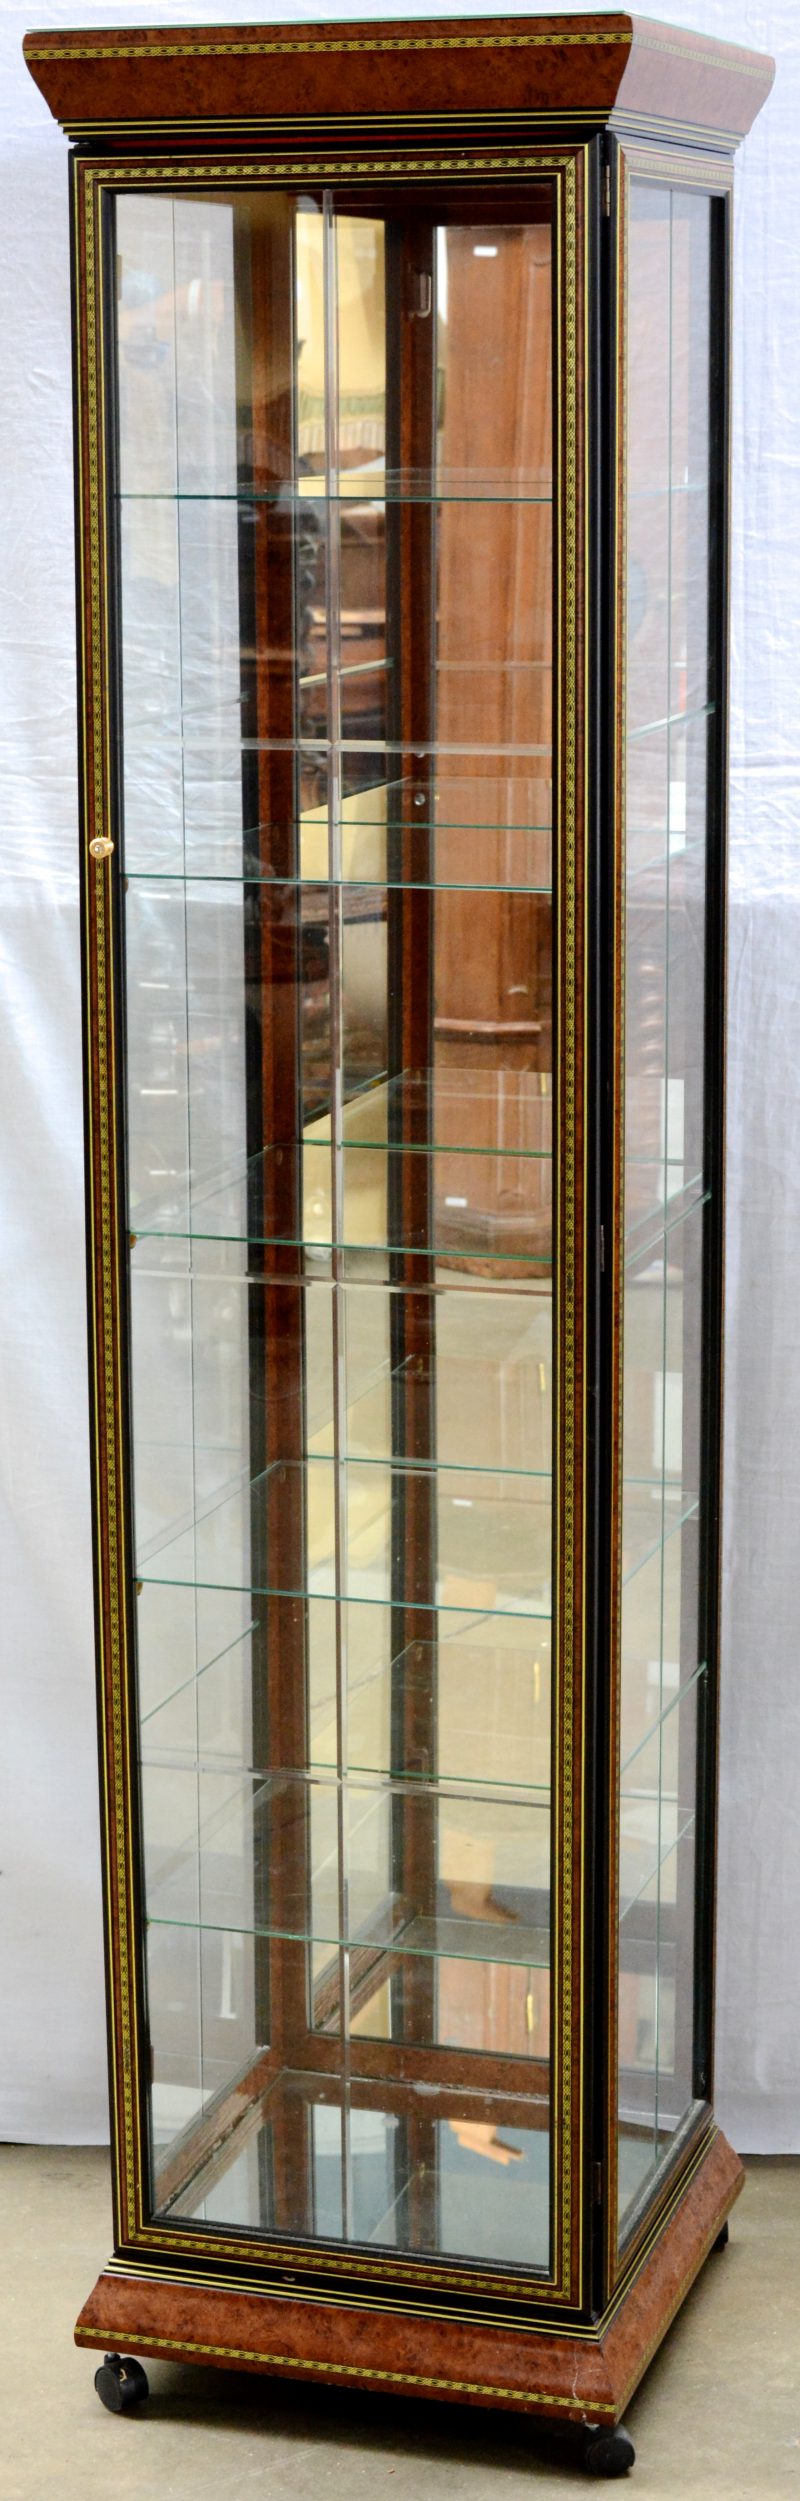 Een Italiaanse kolomvitrine op wieltjes met vijf glazen leggers en versierd met imitatie wortelnootfineer.